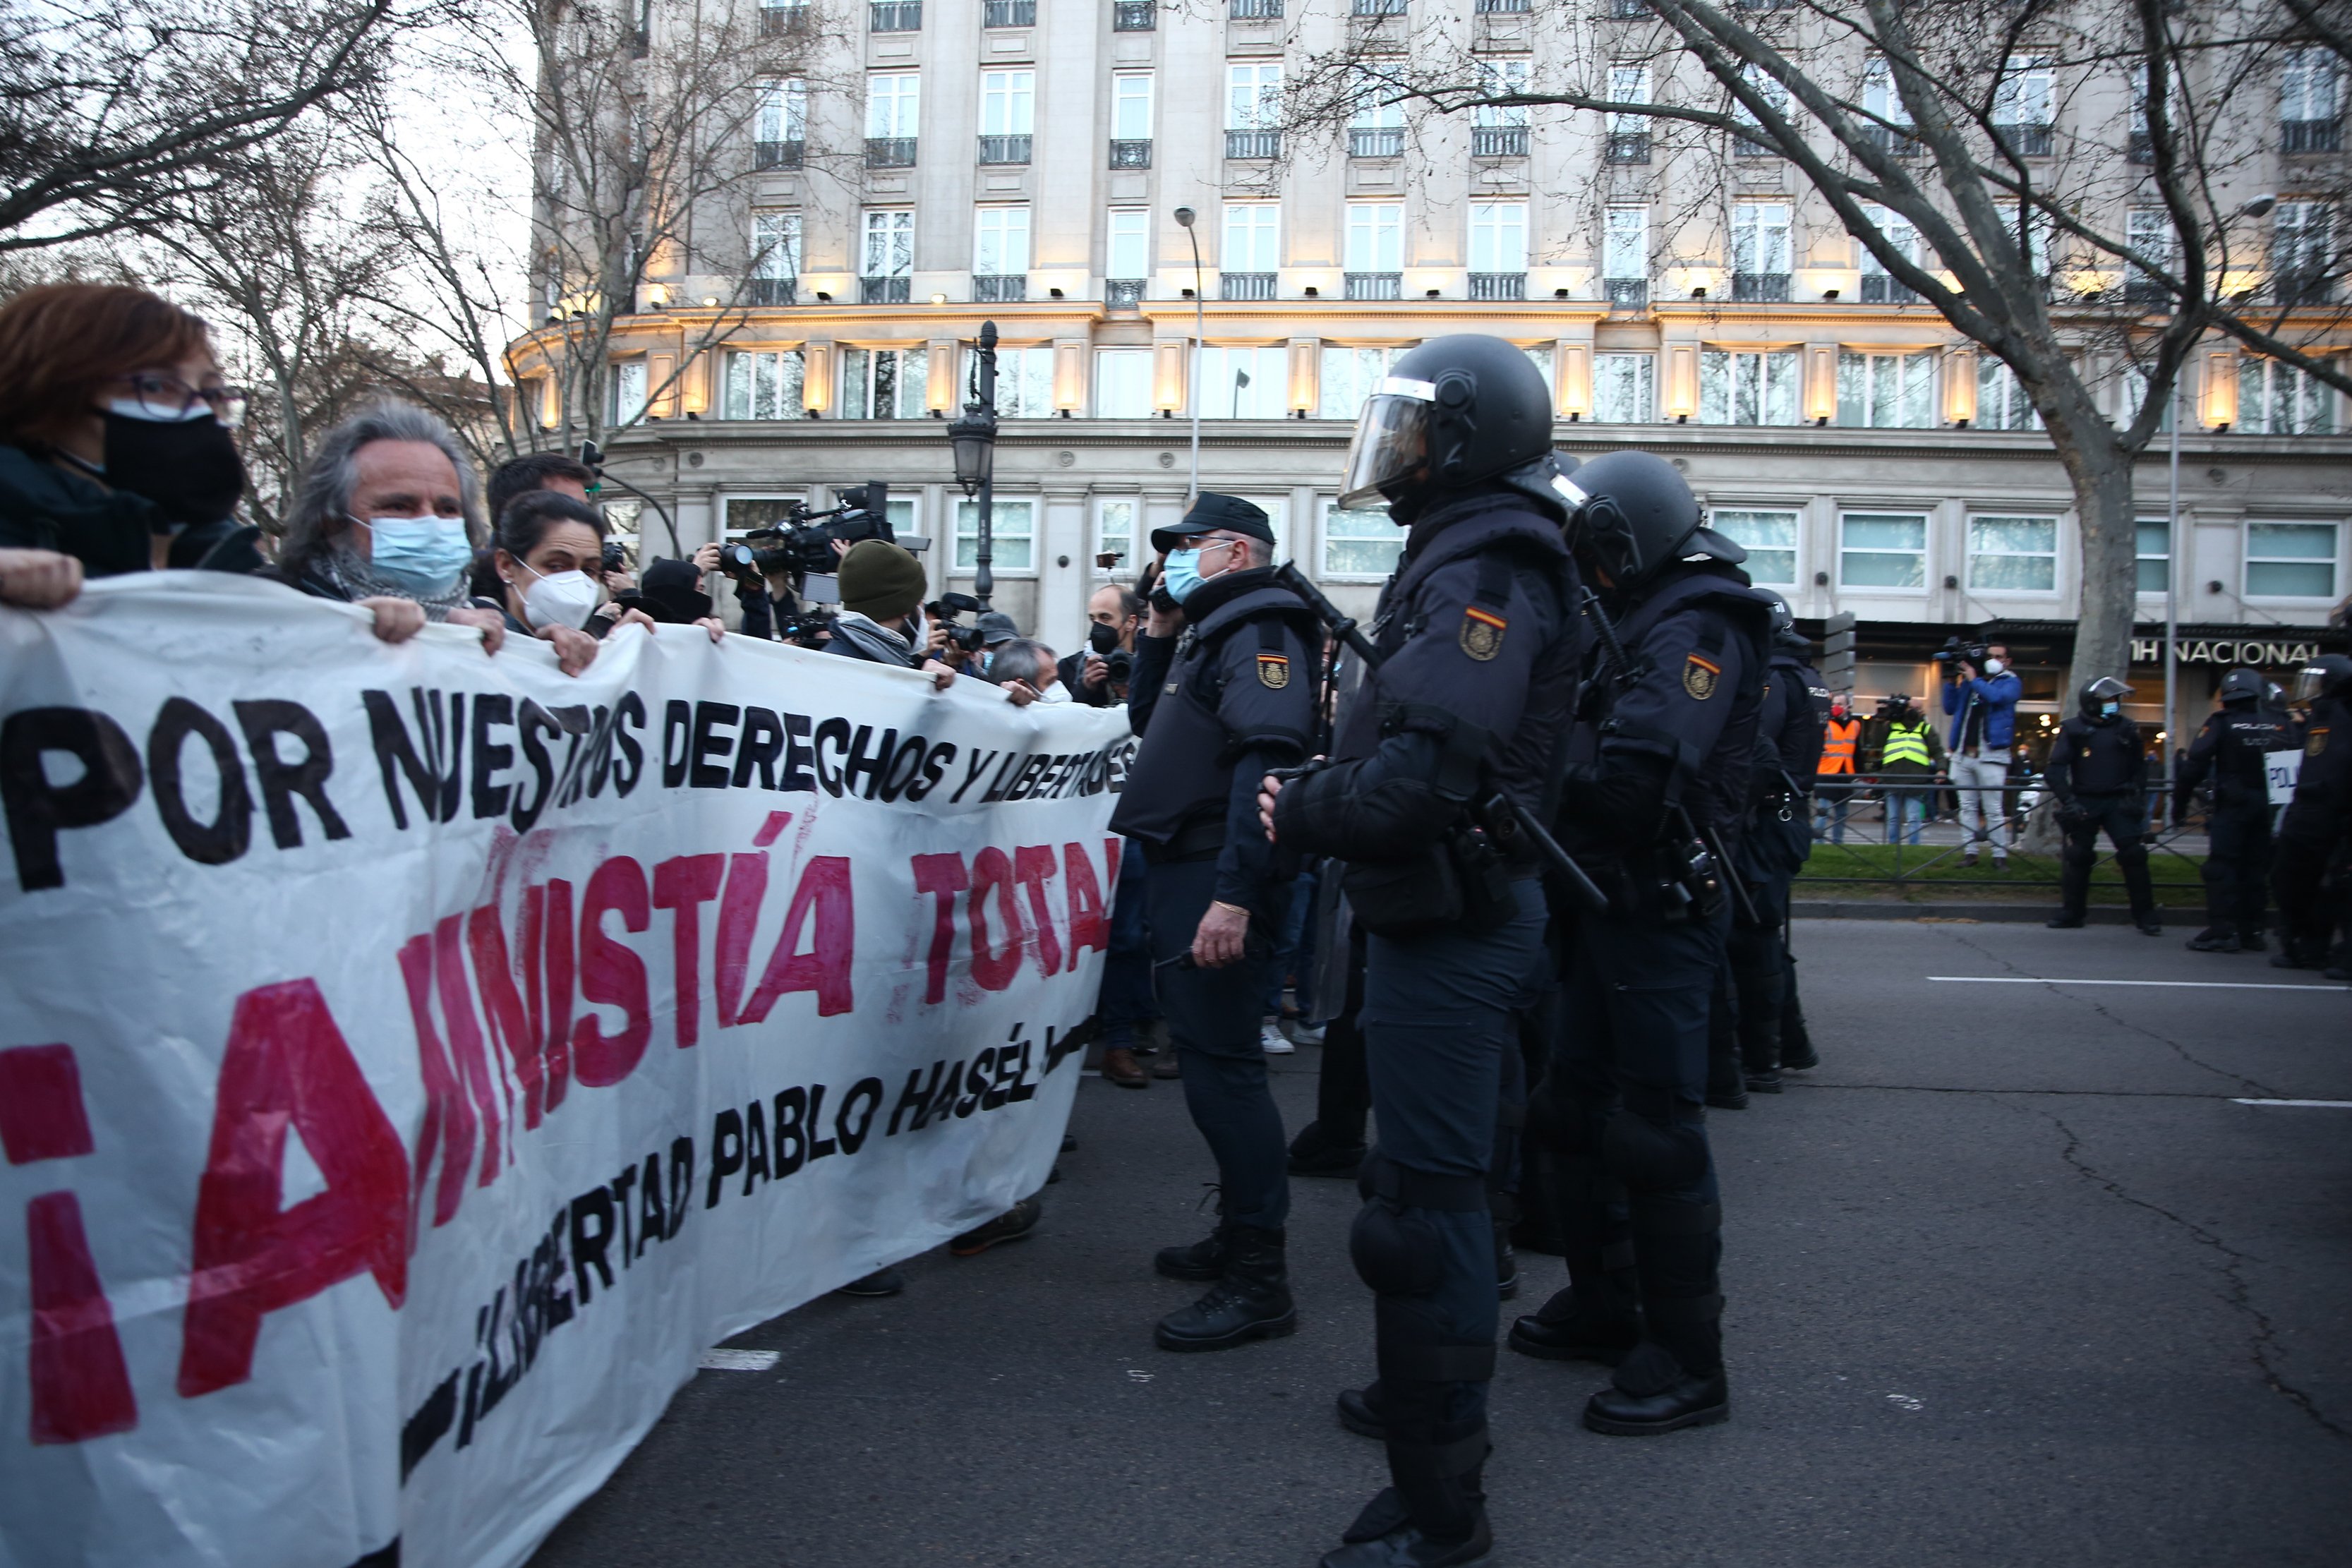 Els Estats Units es fan ressò dels abusos policials a Espanya en un informe